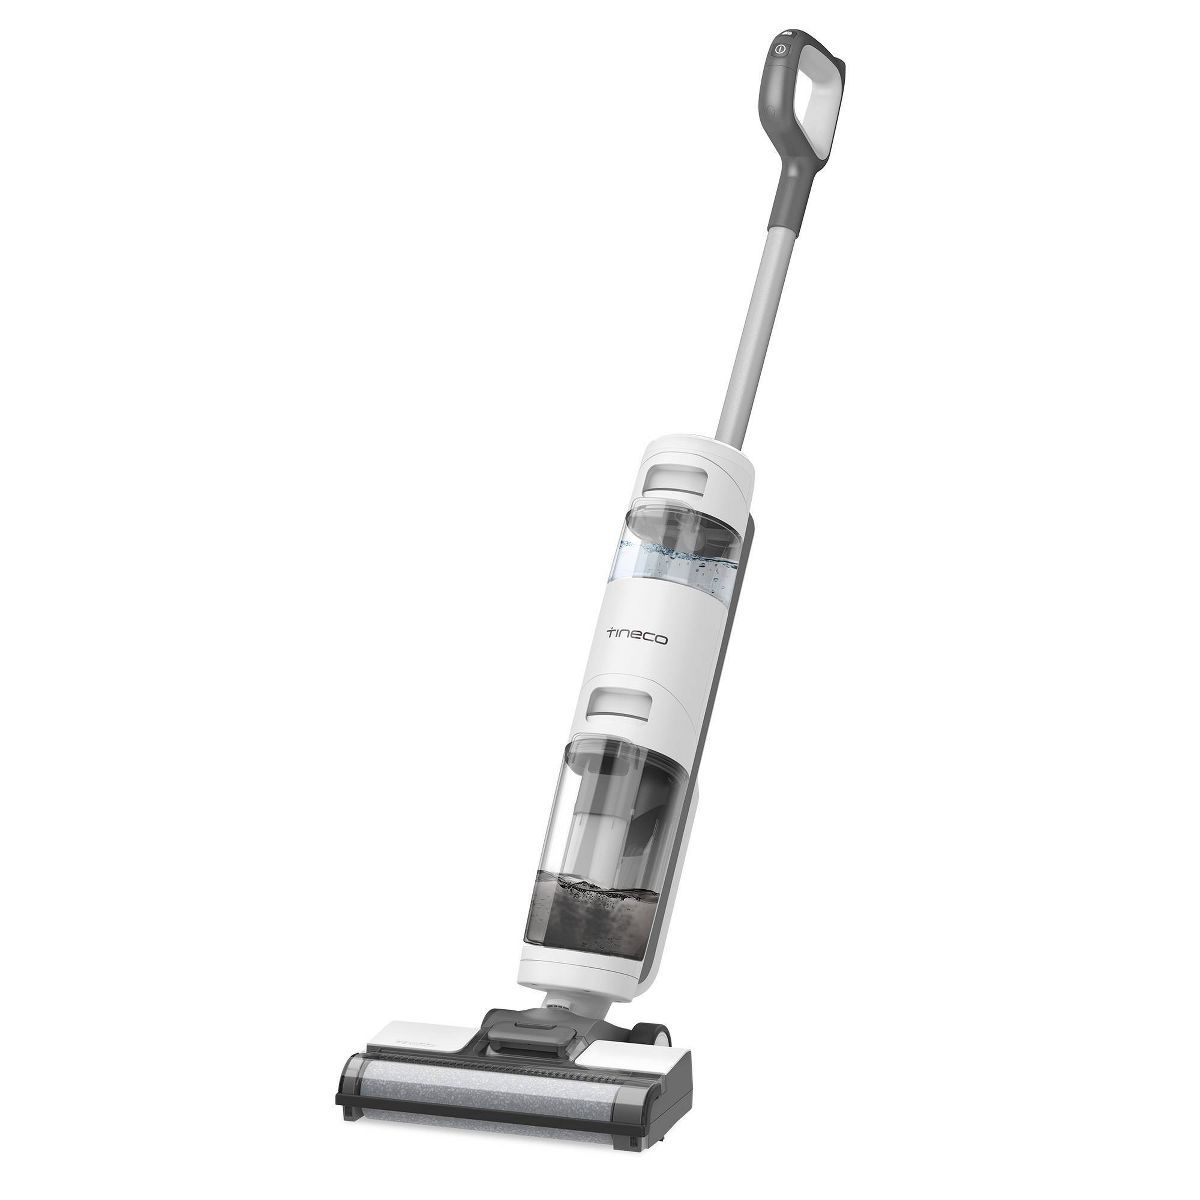 Tineco iFloor 3 Breeze - Cordless Wet/Dry Vacuum Cleaner and Hard Floor Washer | Target